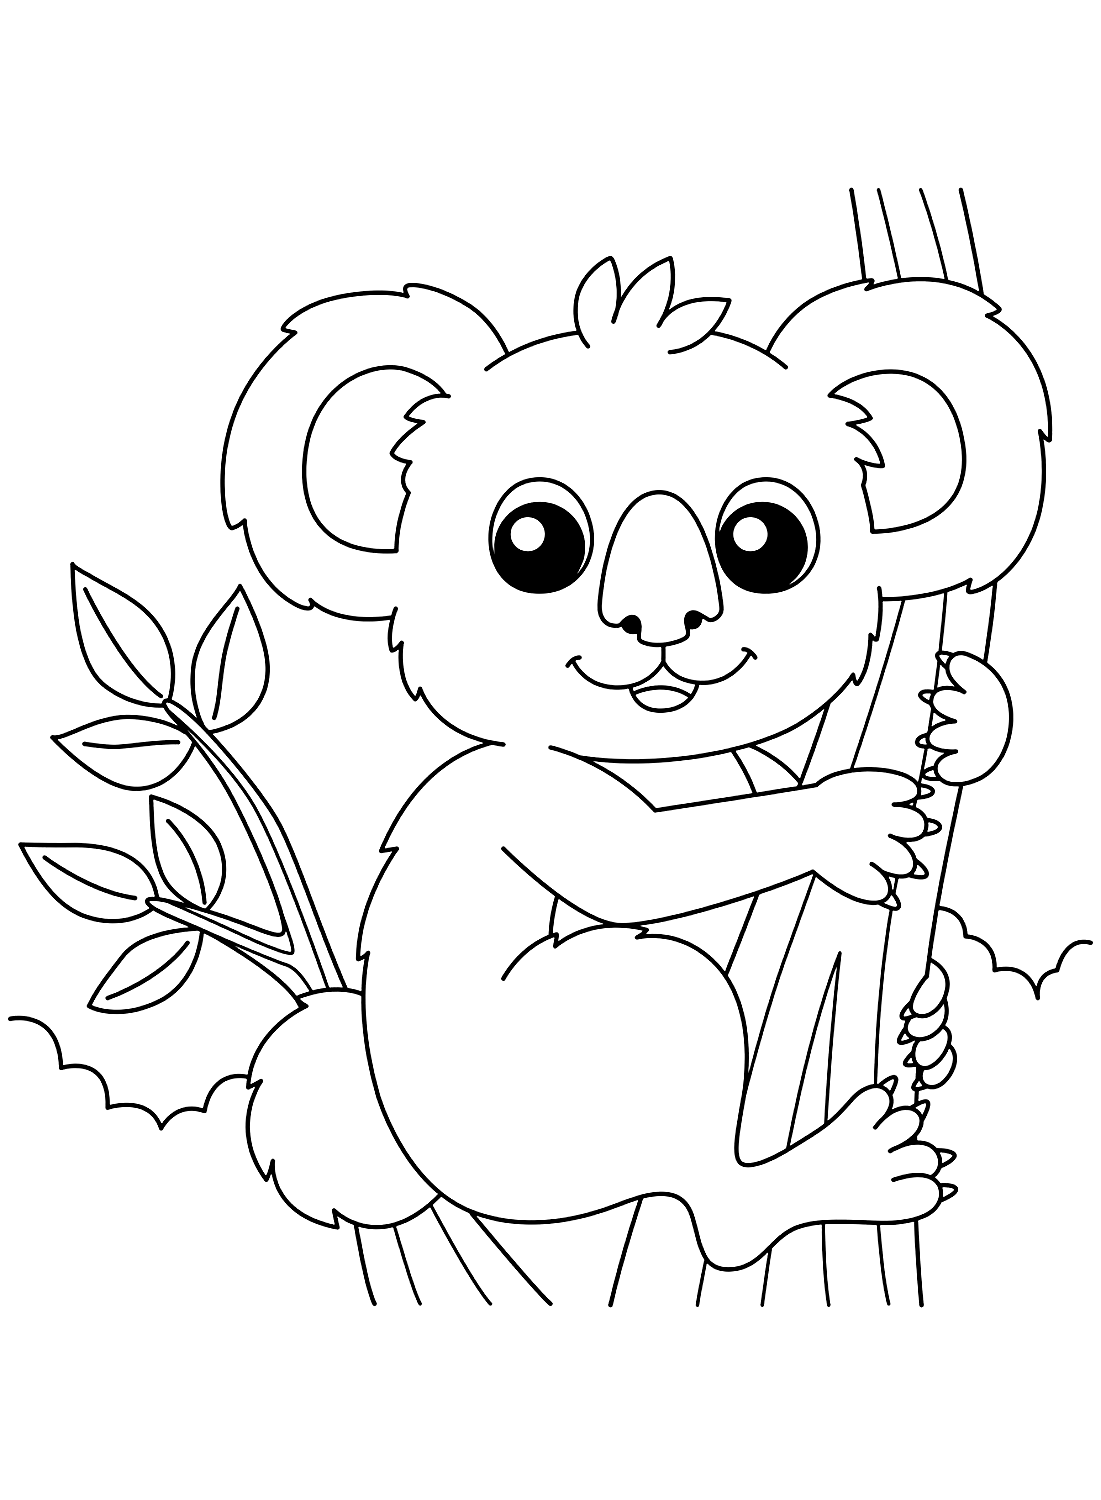 Happy Koala coloring sheet